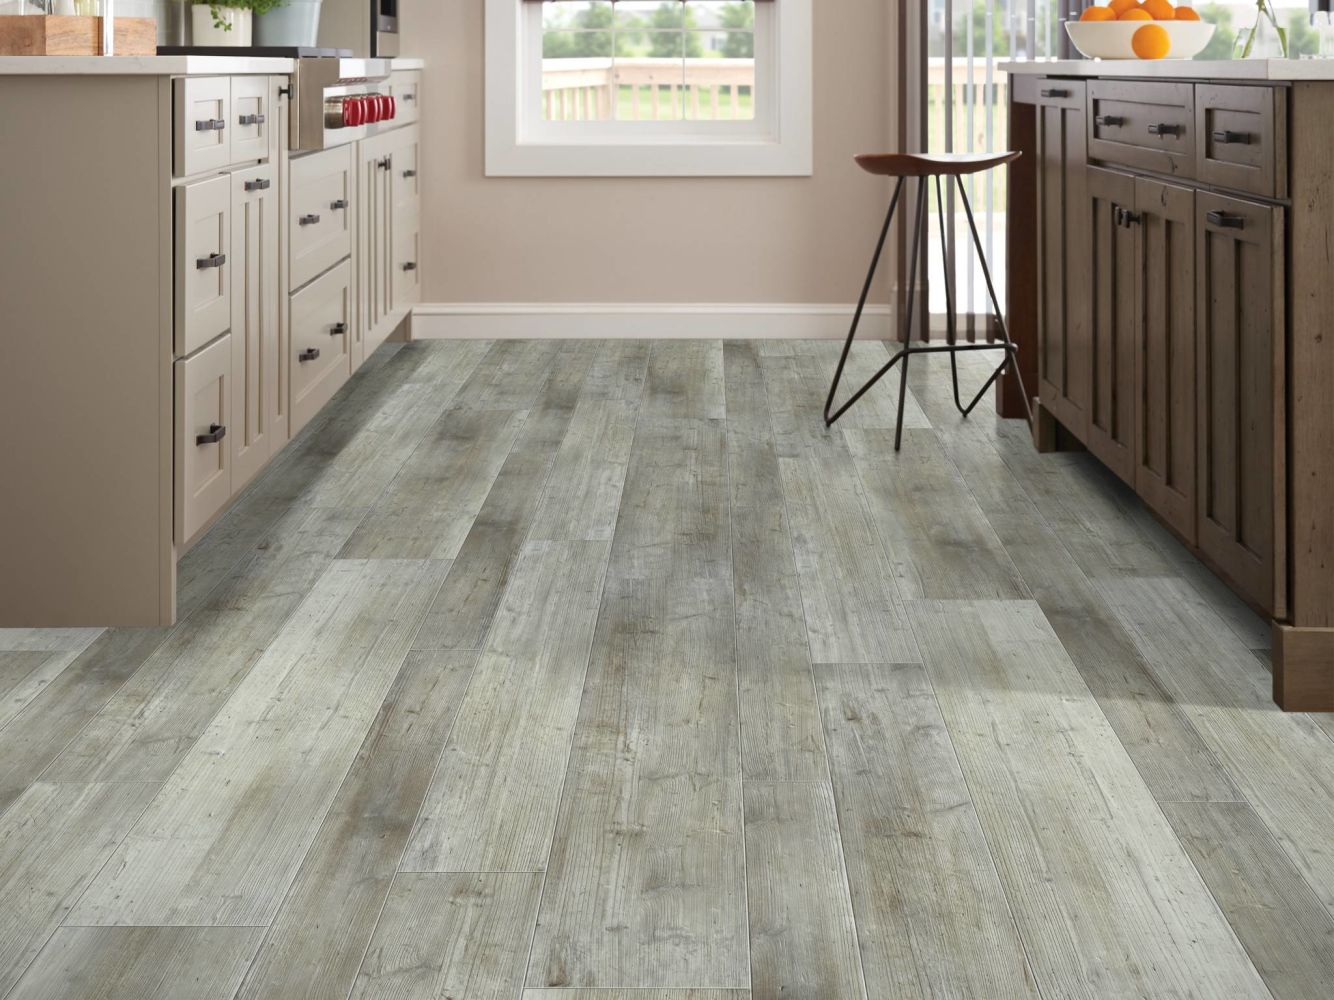 Shaw Floors Colortile Spc Cl Aspire Mix Distinct Pine 05039_CV185